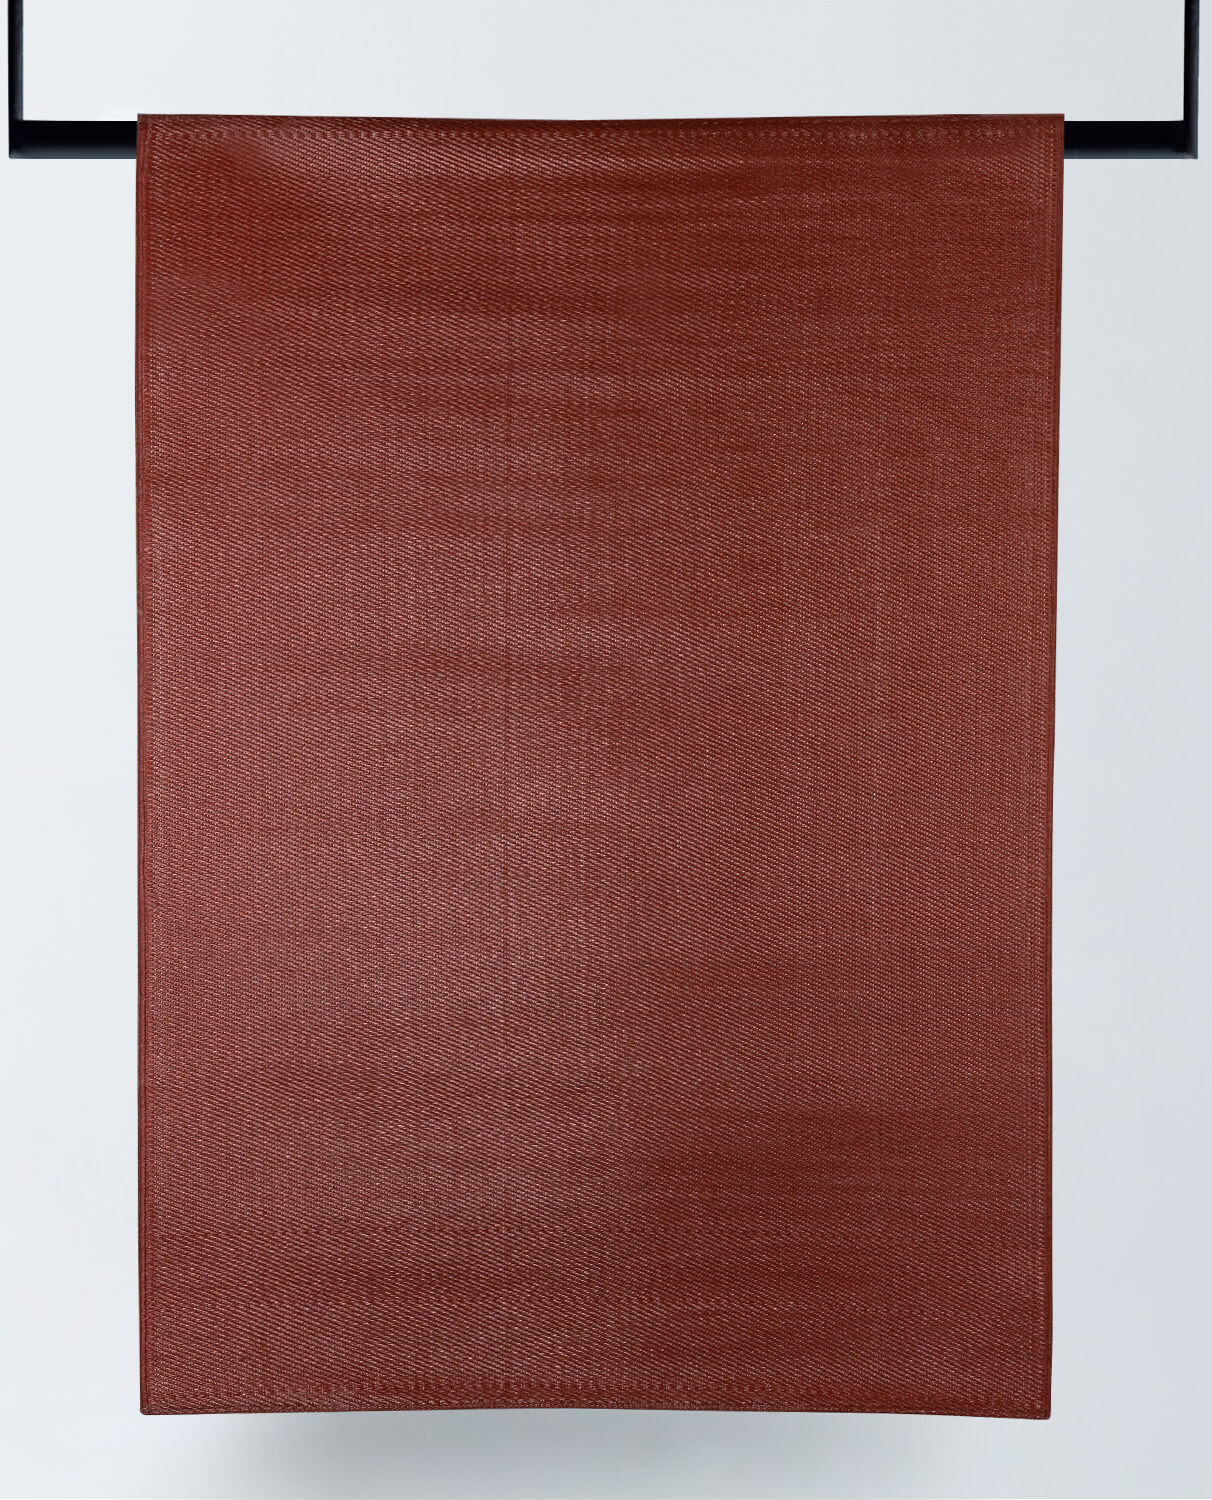 Tappeto per Esterni in Polipropilene (213x150 cm) Llevant, immagine della galleria 1